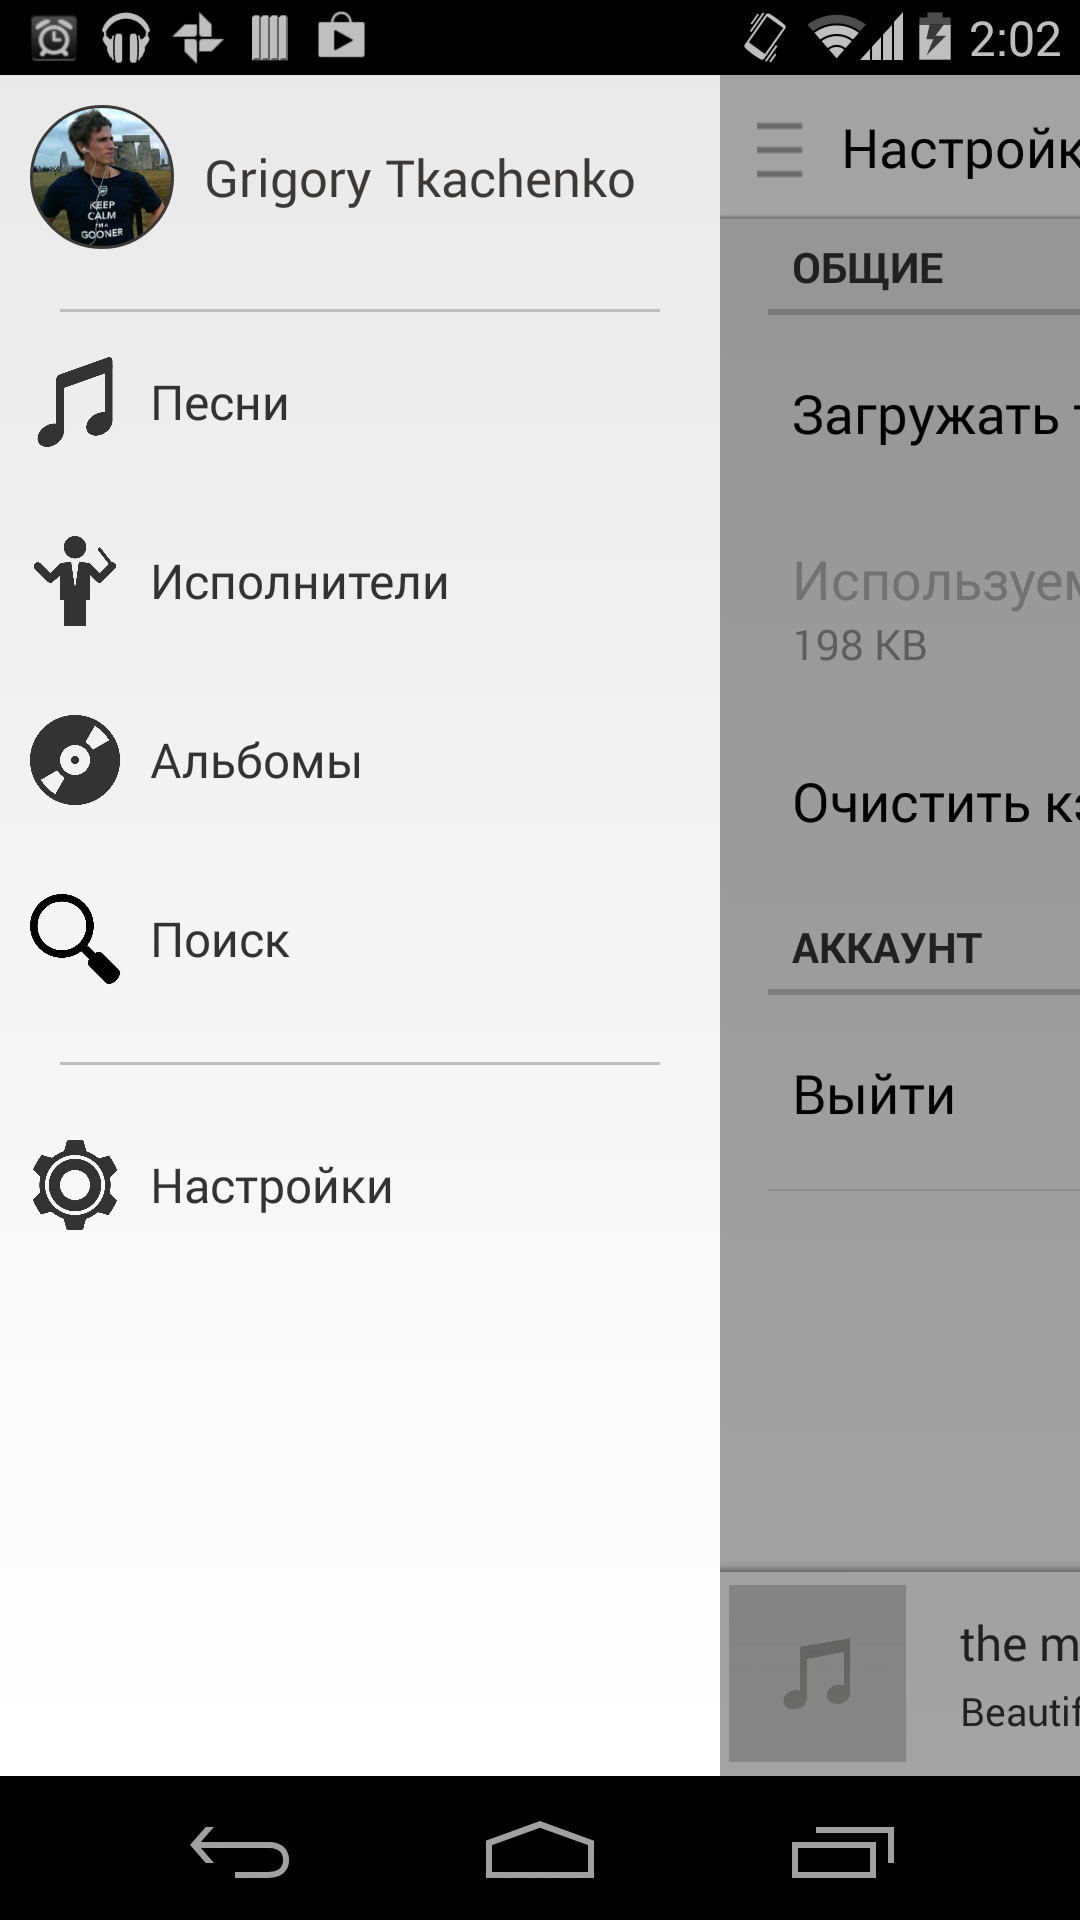 Android application Музыка для Одноклассников screenshort